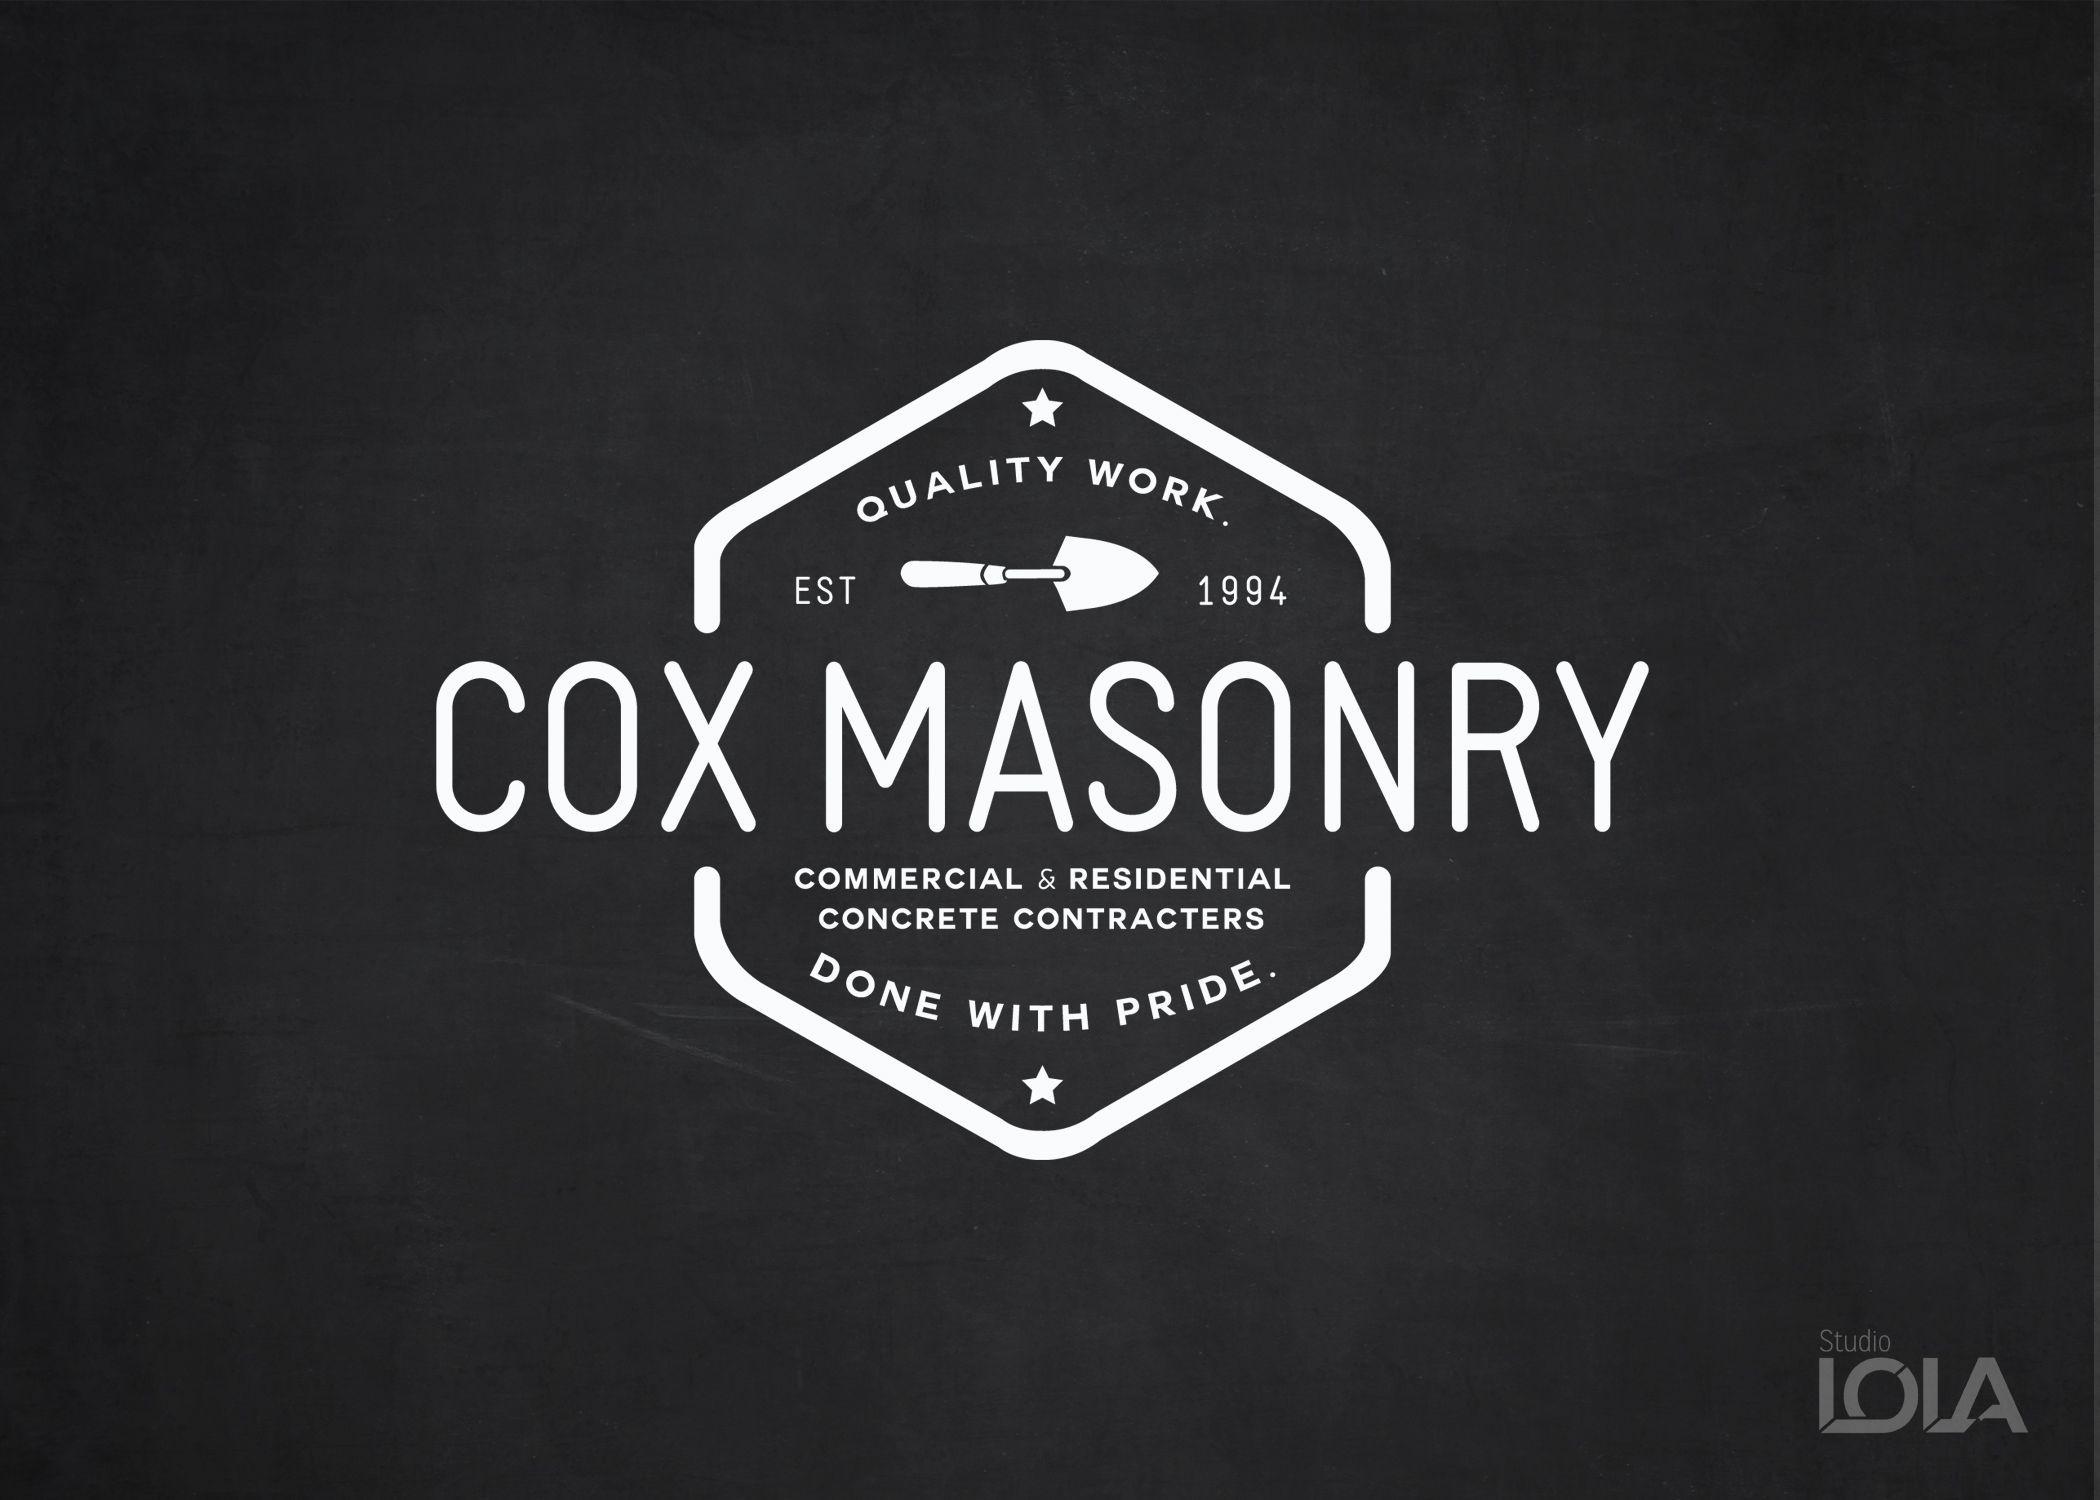 Masonry Logo - Cox Masonry logo design | Notable Logos | Pinterest | Logo design ...